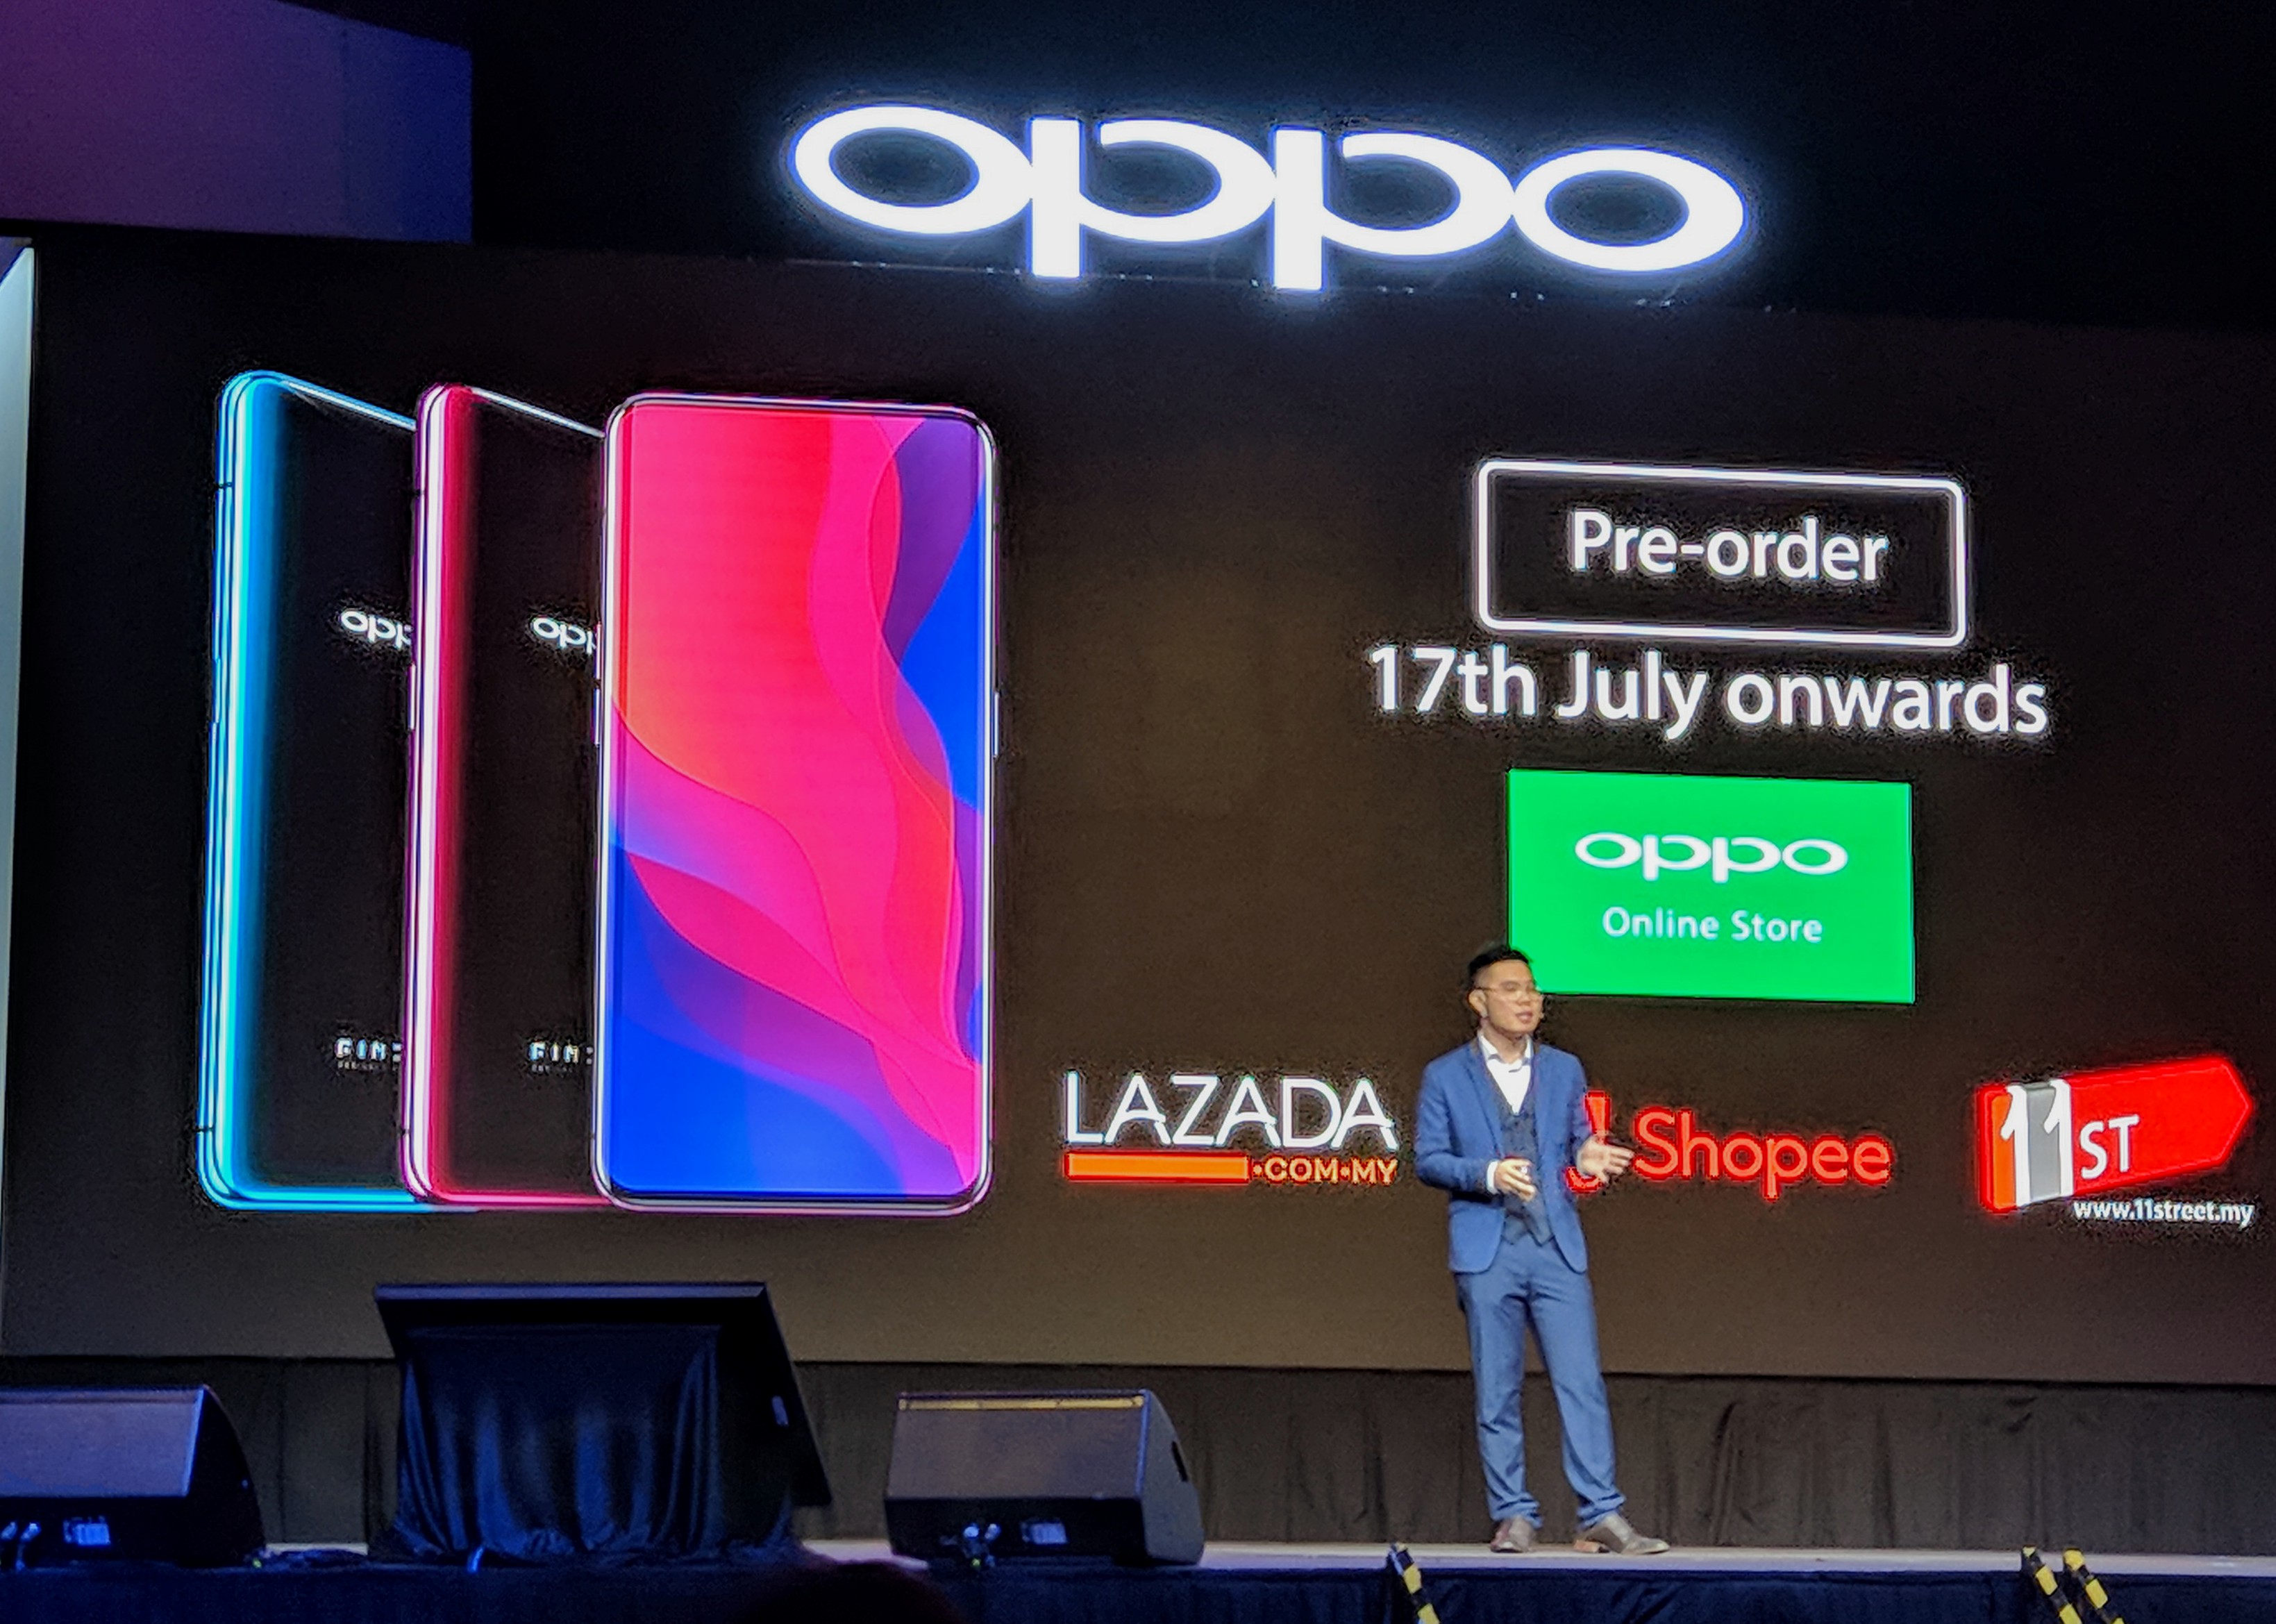 升降式前後鏡頭、曲面全景屏、3D 面部解鎖：OPPO Find X 正式在馬來西亞發布；售價 RM3,699! 15